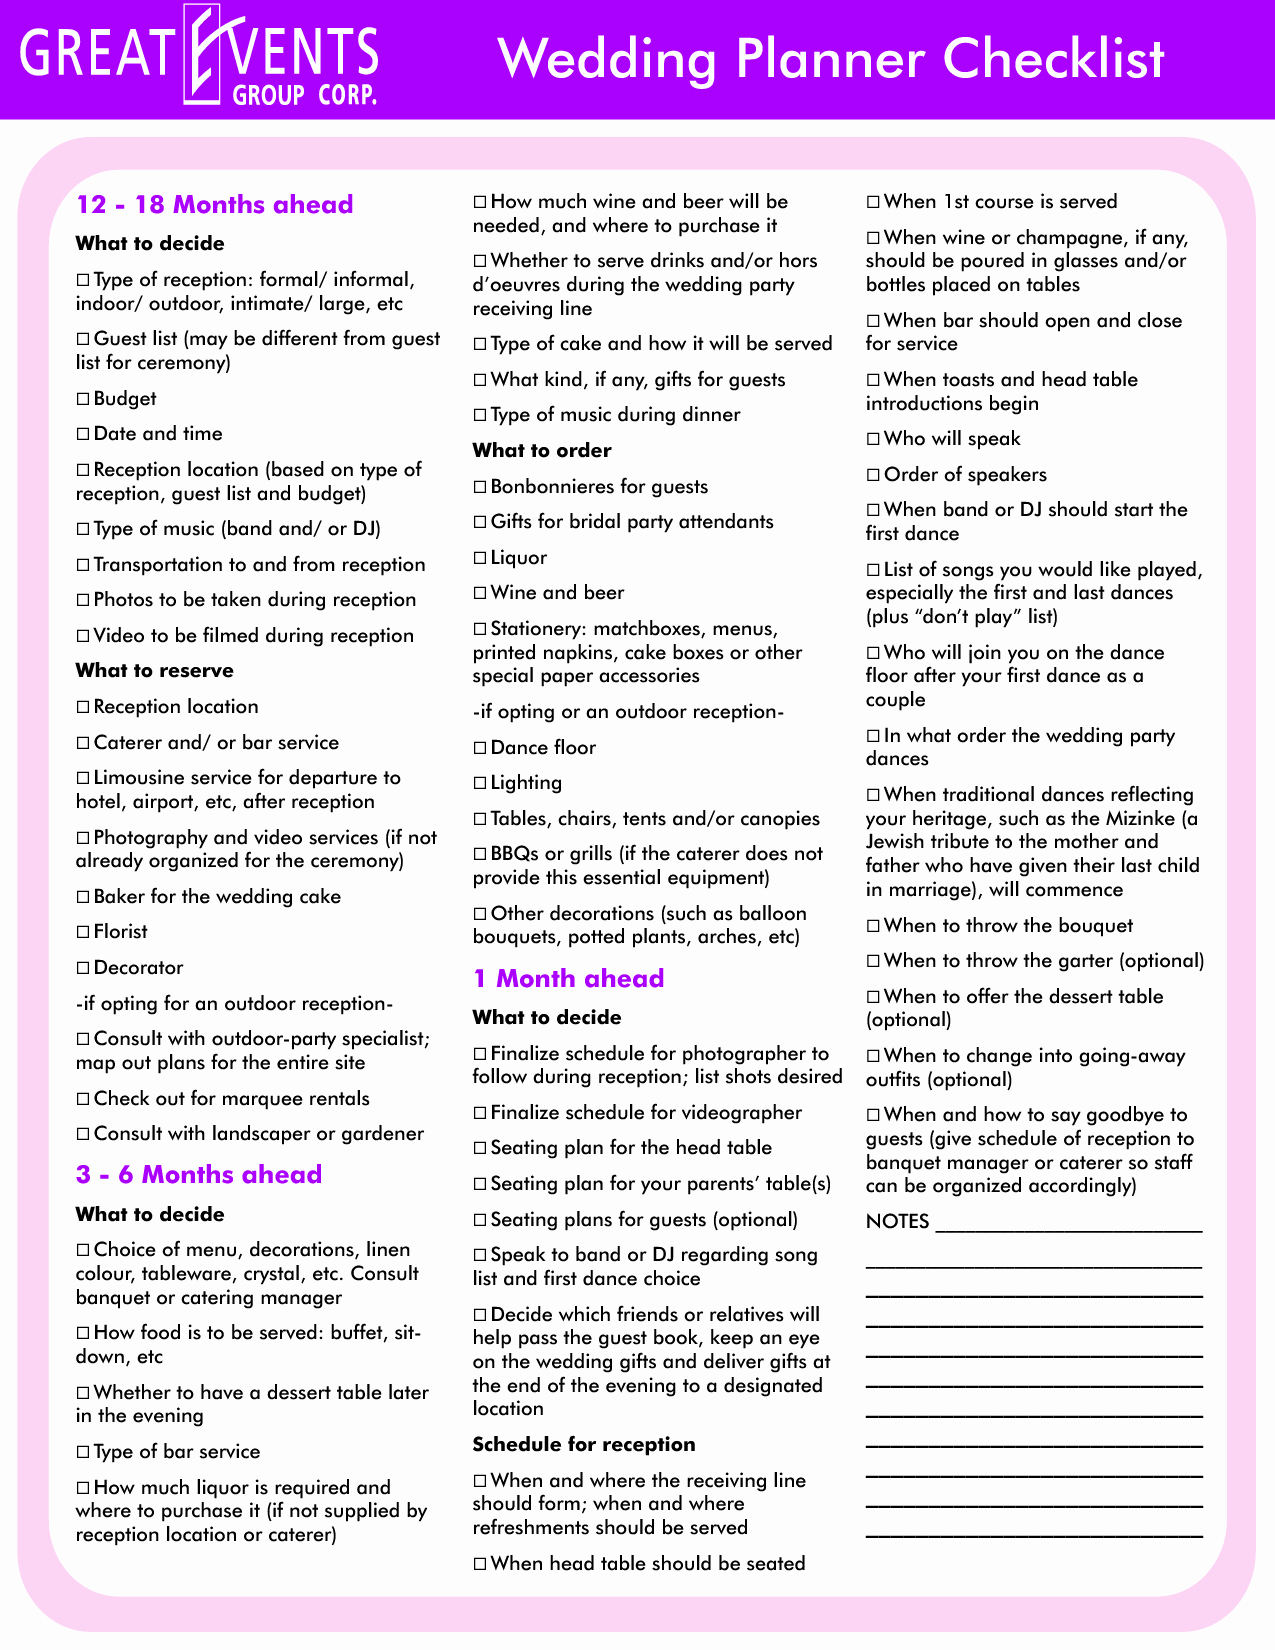 Wedding Plan Checklist Template Unique Detailed Wedding Planning Checklist